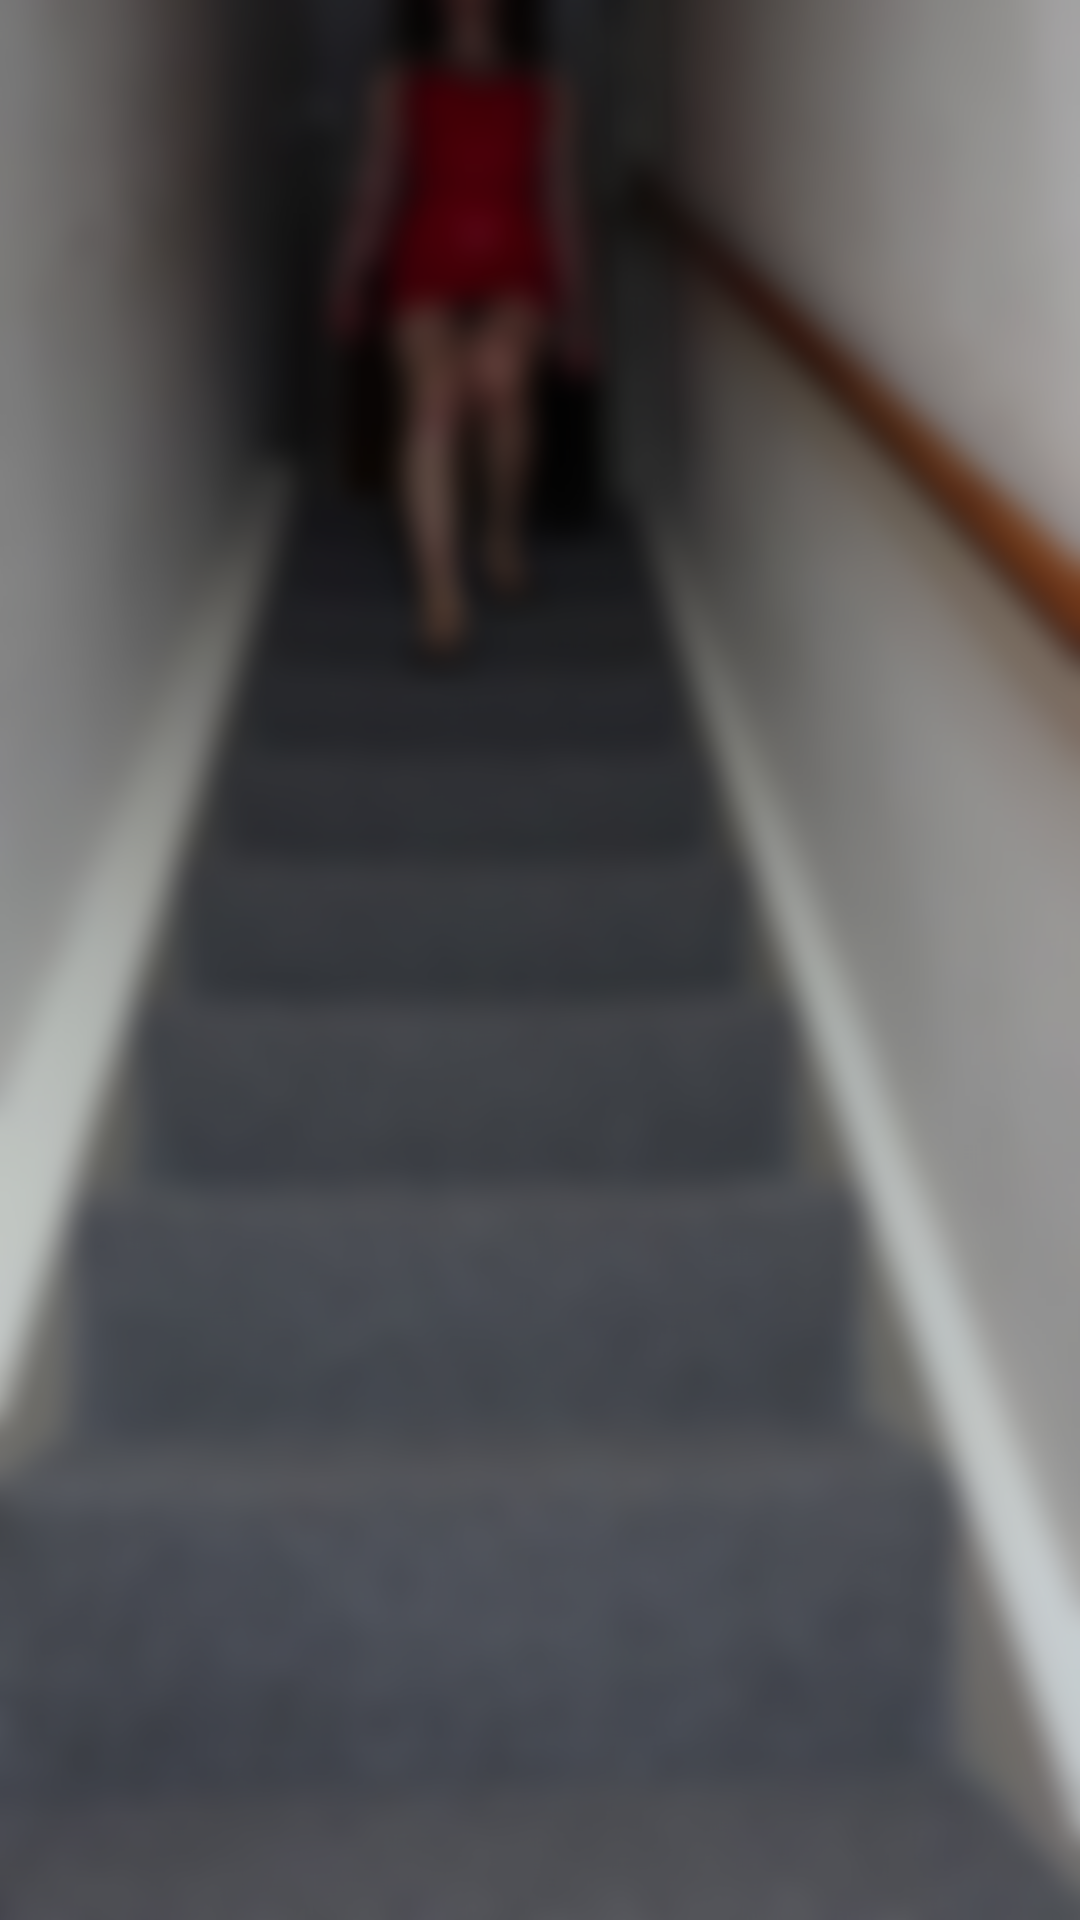 Descendo as escadas vestido de látex vermelho.